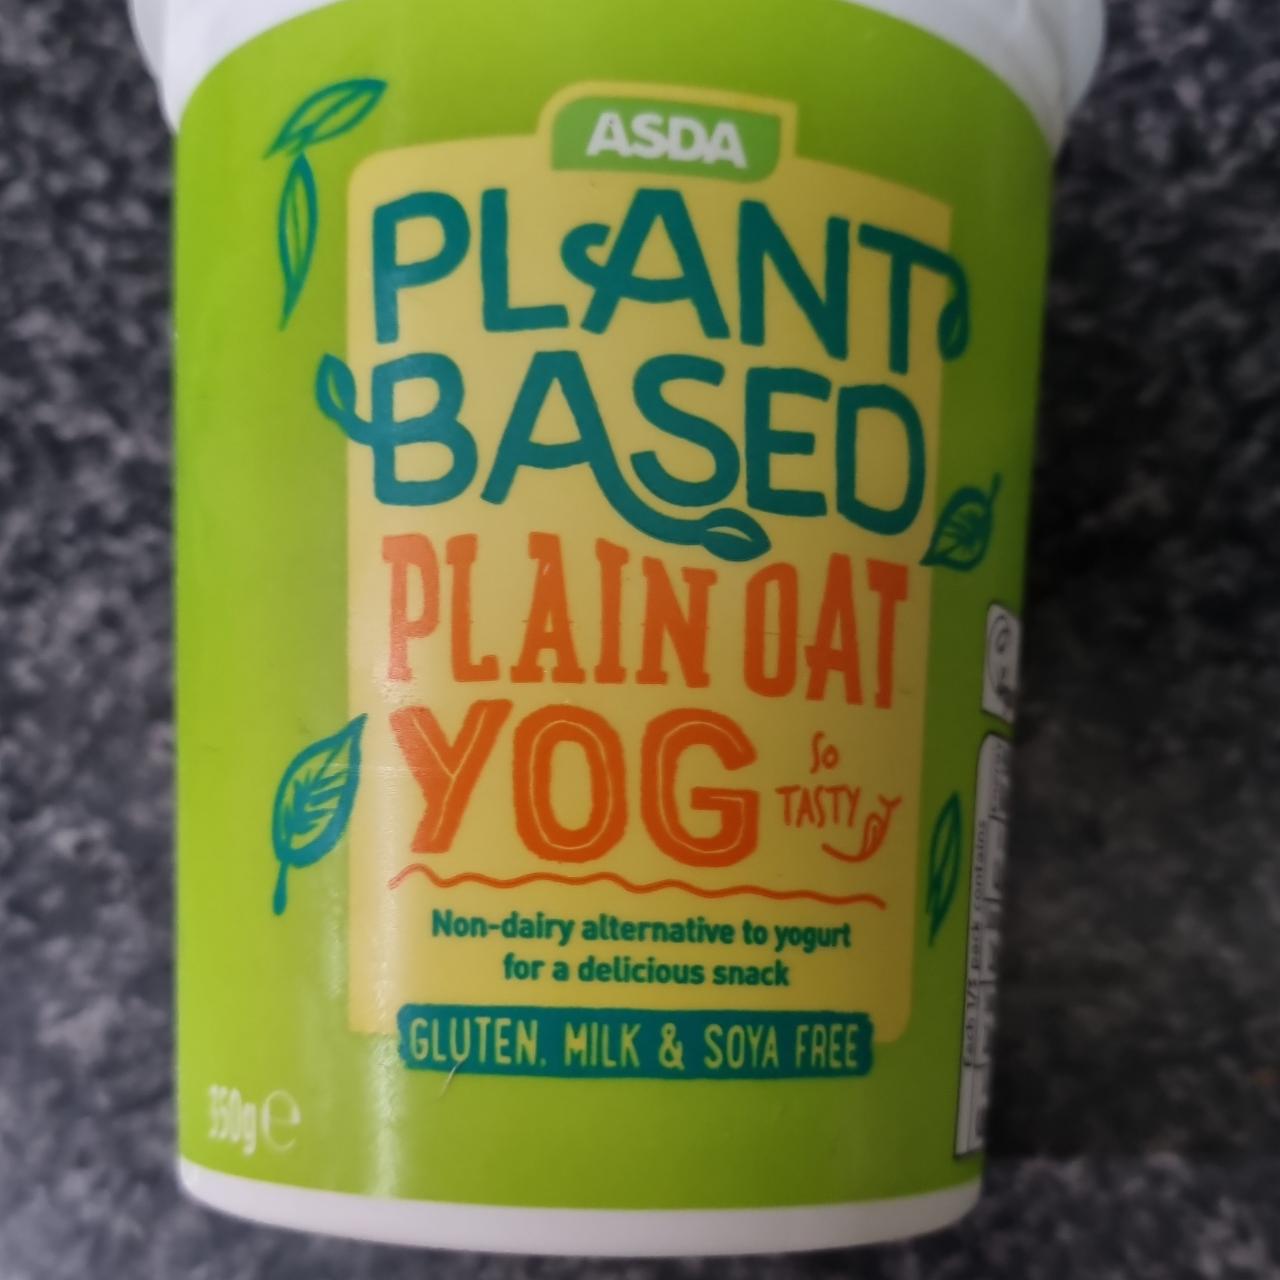 Fotografie - Plant based plain oat yog Asda